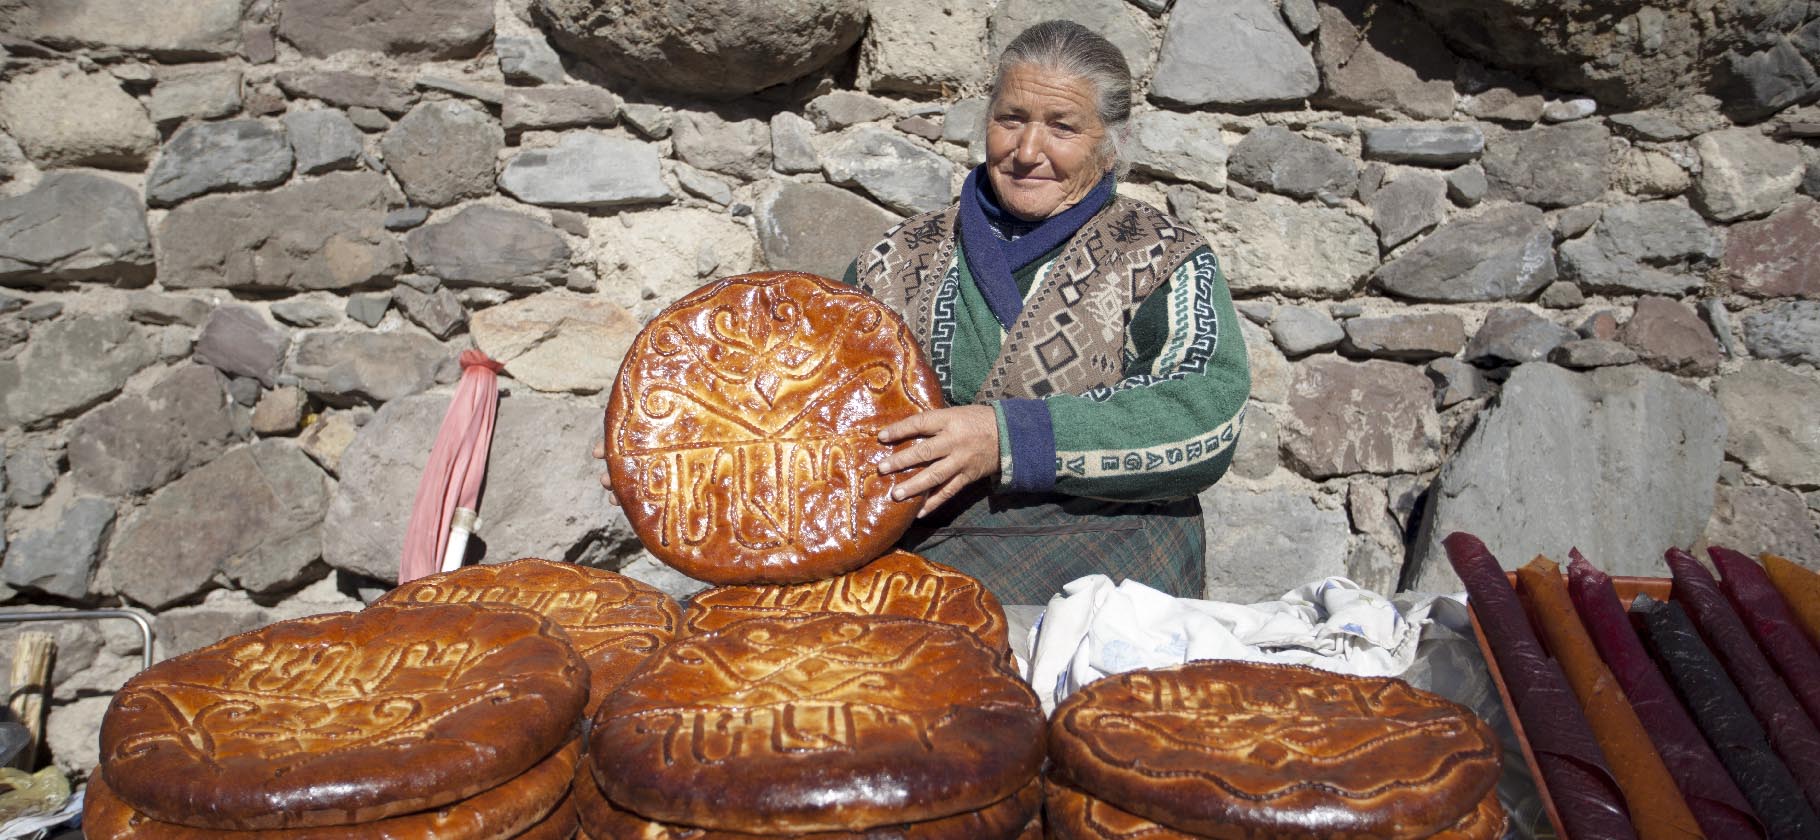 Армянская кухня: 14 армянских блюд, из-за которых вы влюбитесь в Армению | Блог